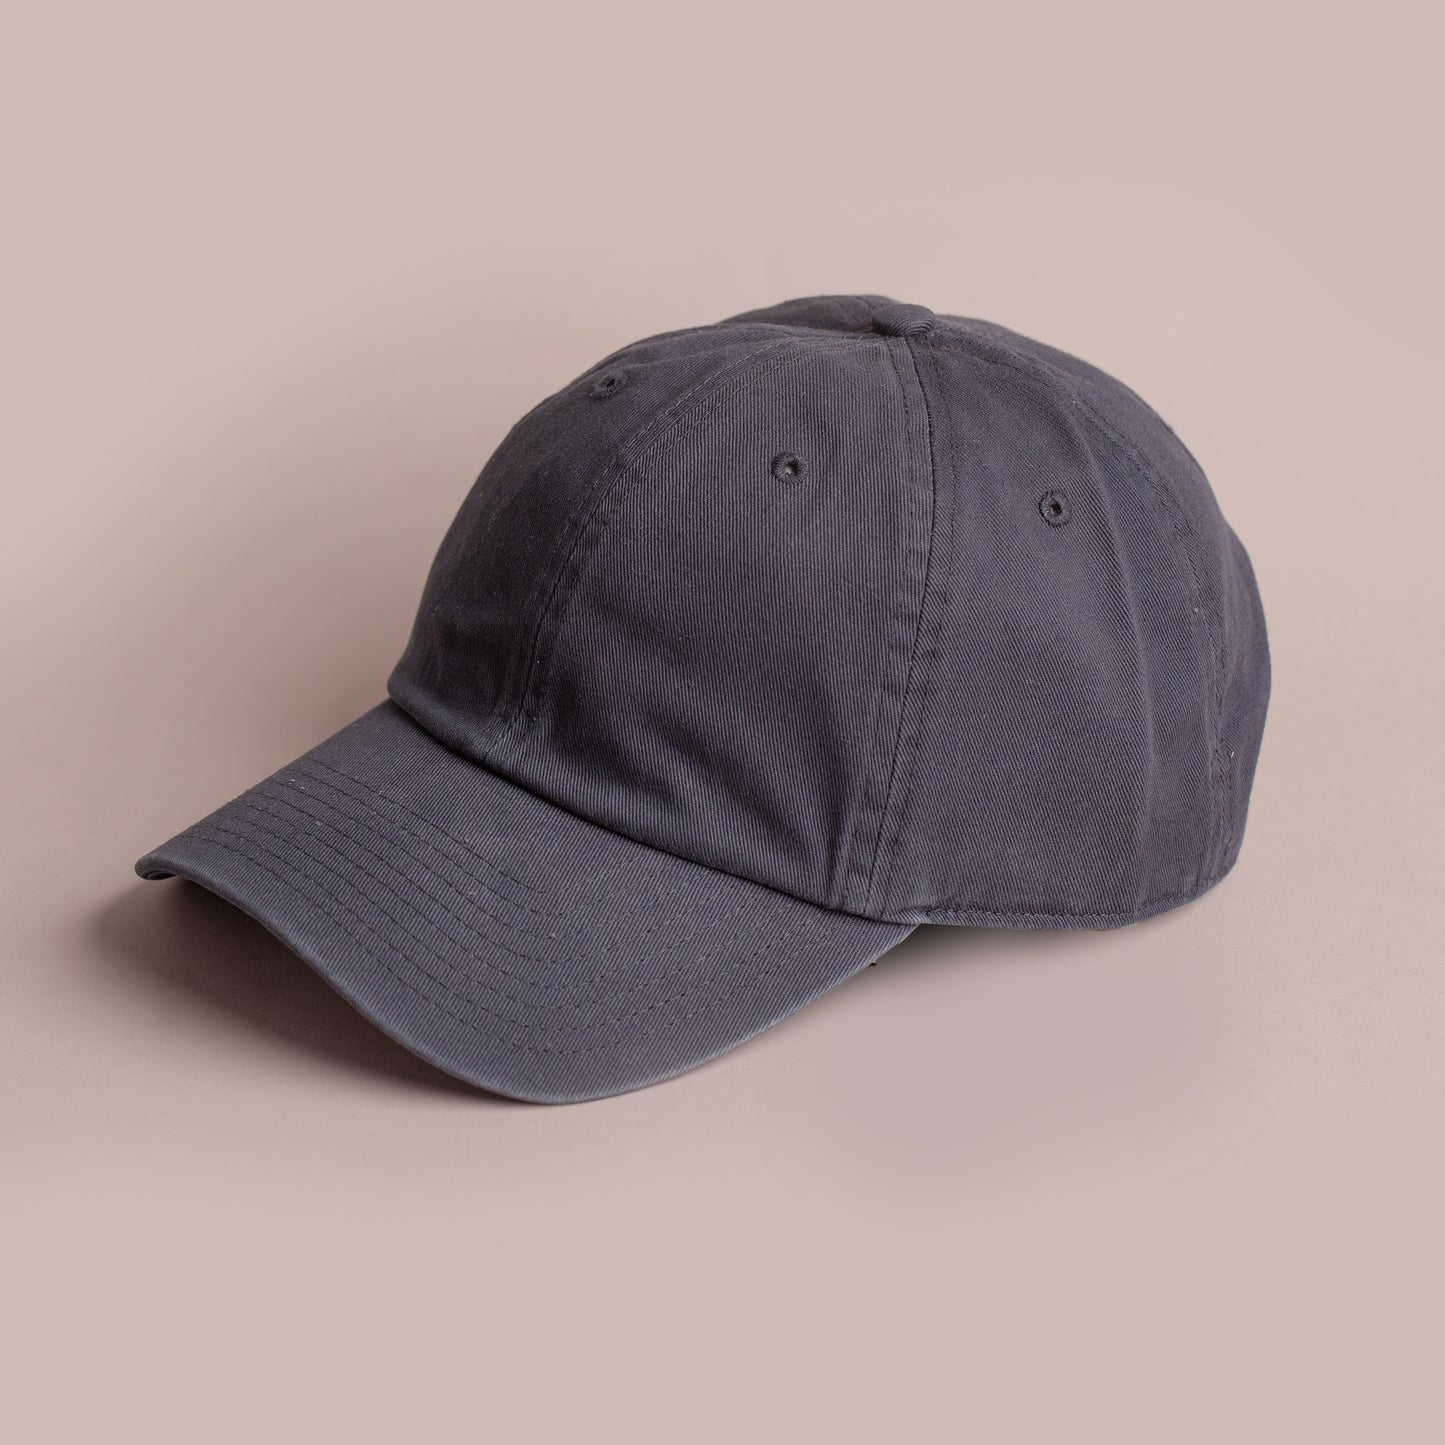 Blank Hat - 47 Brand Dad Cap - Navy